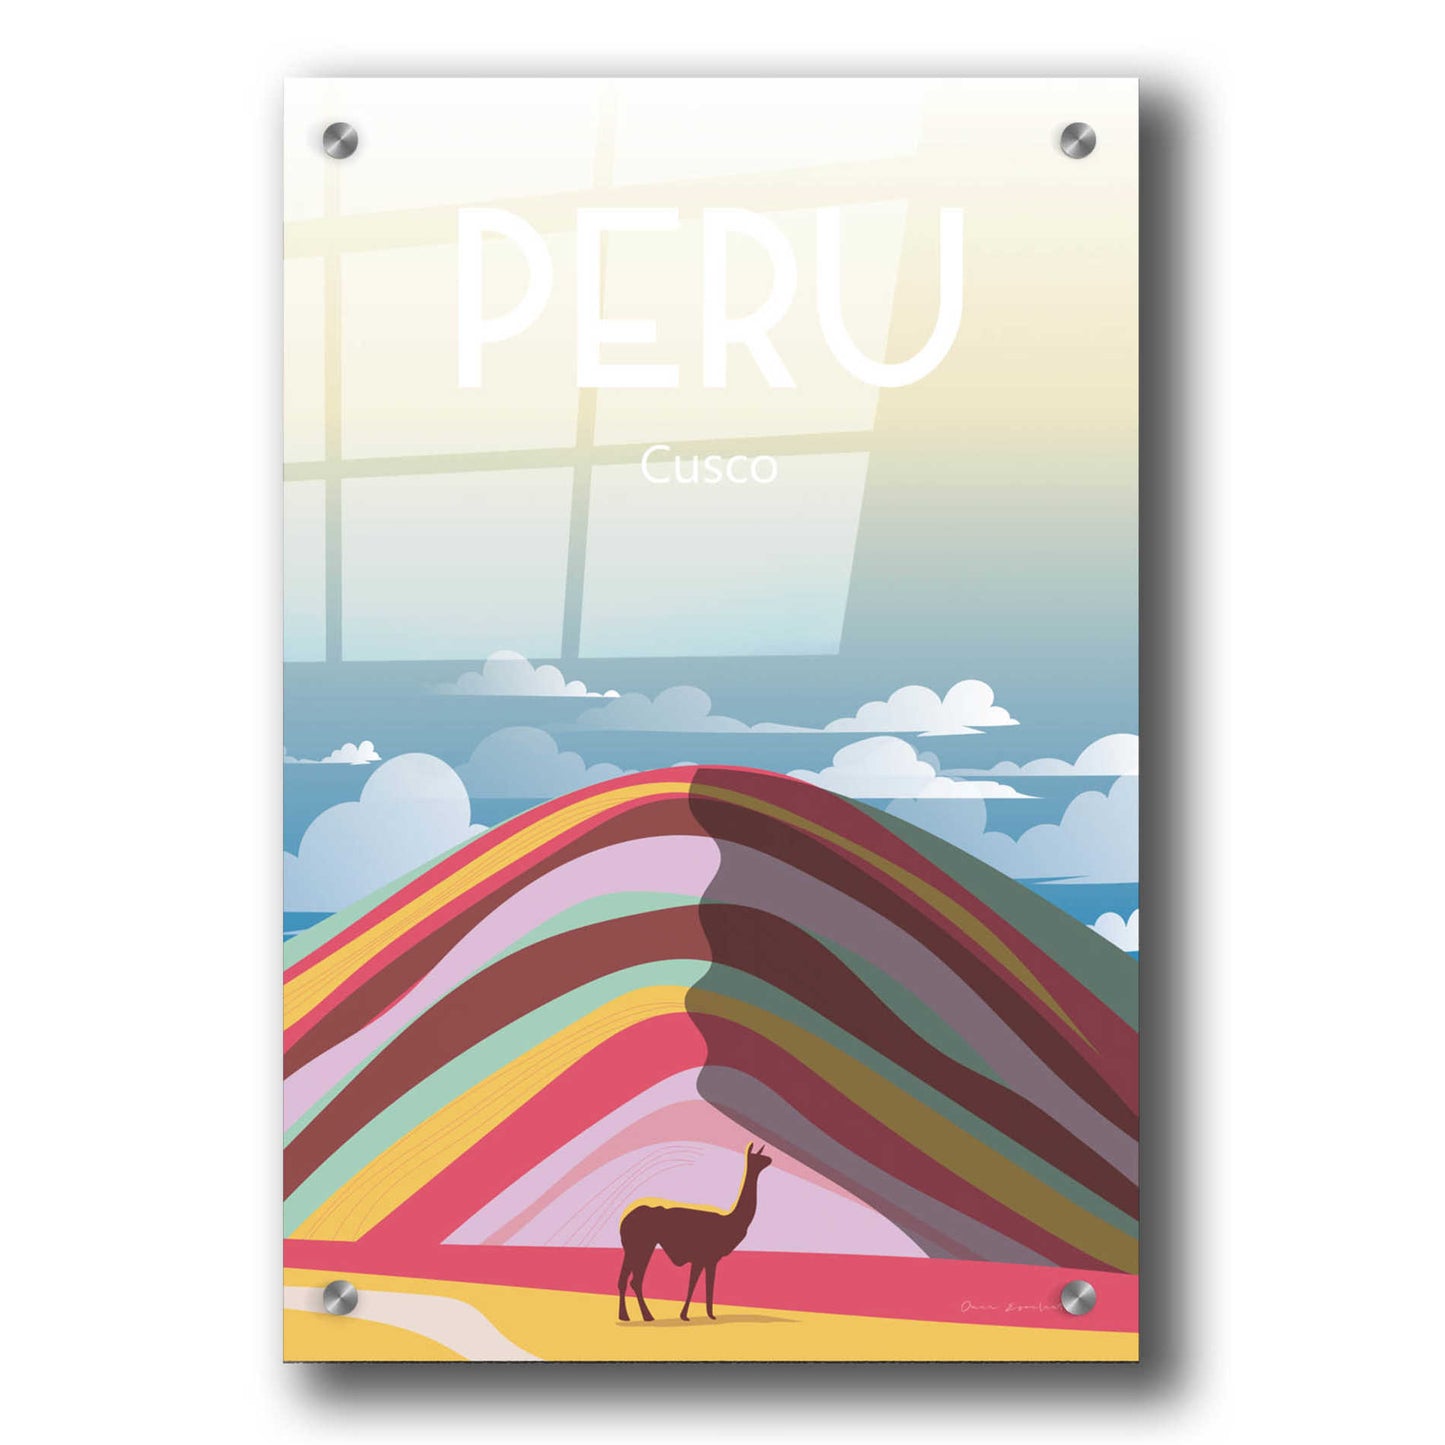 Epic Art 'Peru' by Omar Escalante, Acrylic Glass Wall Art,24x36